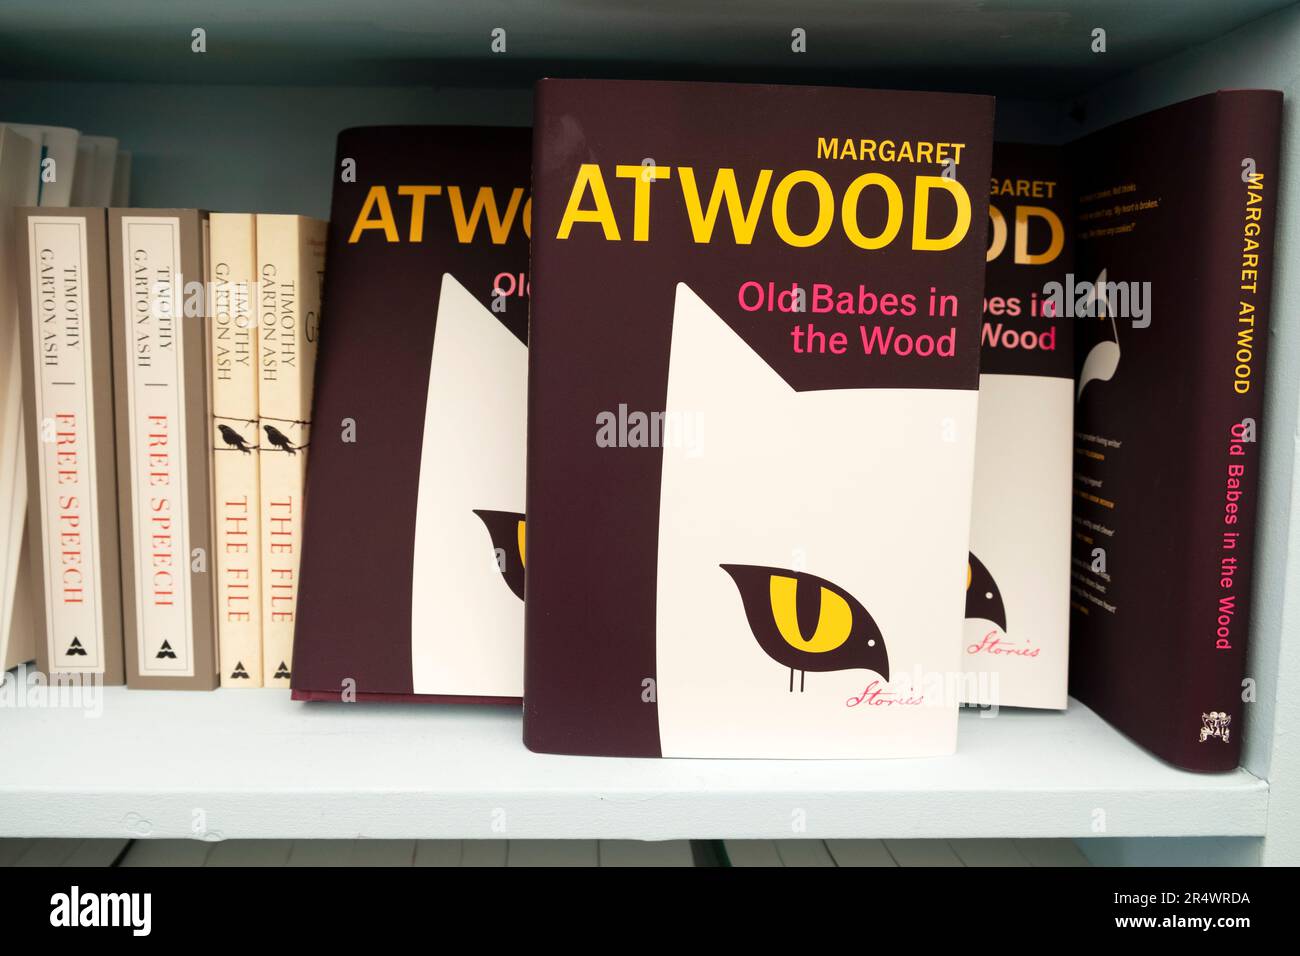 Margaret Atwood livre 'Old Babes in the Woods' couverture avant sur la librairie livre étagère Hay Festival 2023 Hay-on-Wye Wales Royaume-Uni Grande-Bretagne KATHY DEWITT Banque D'Images